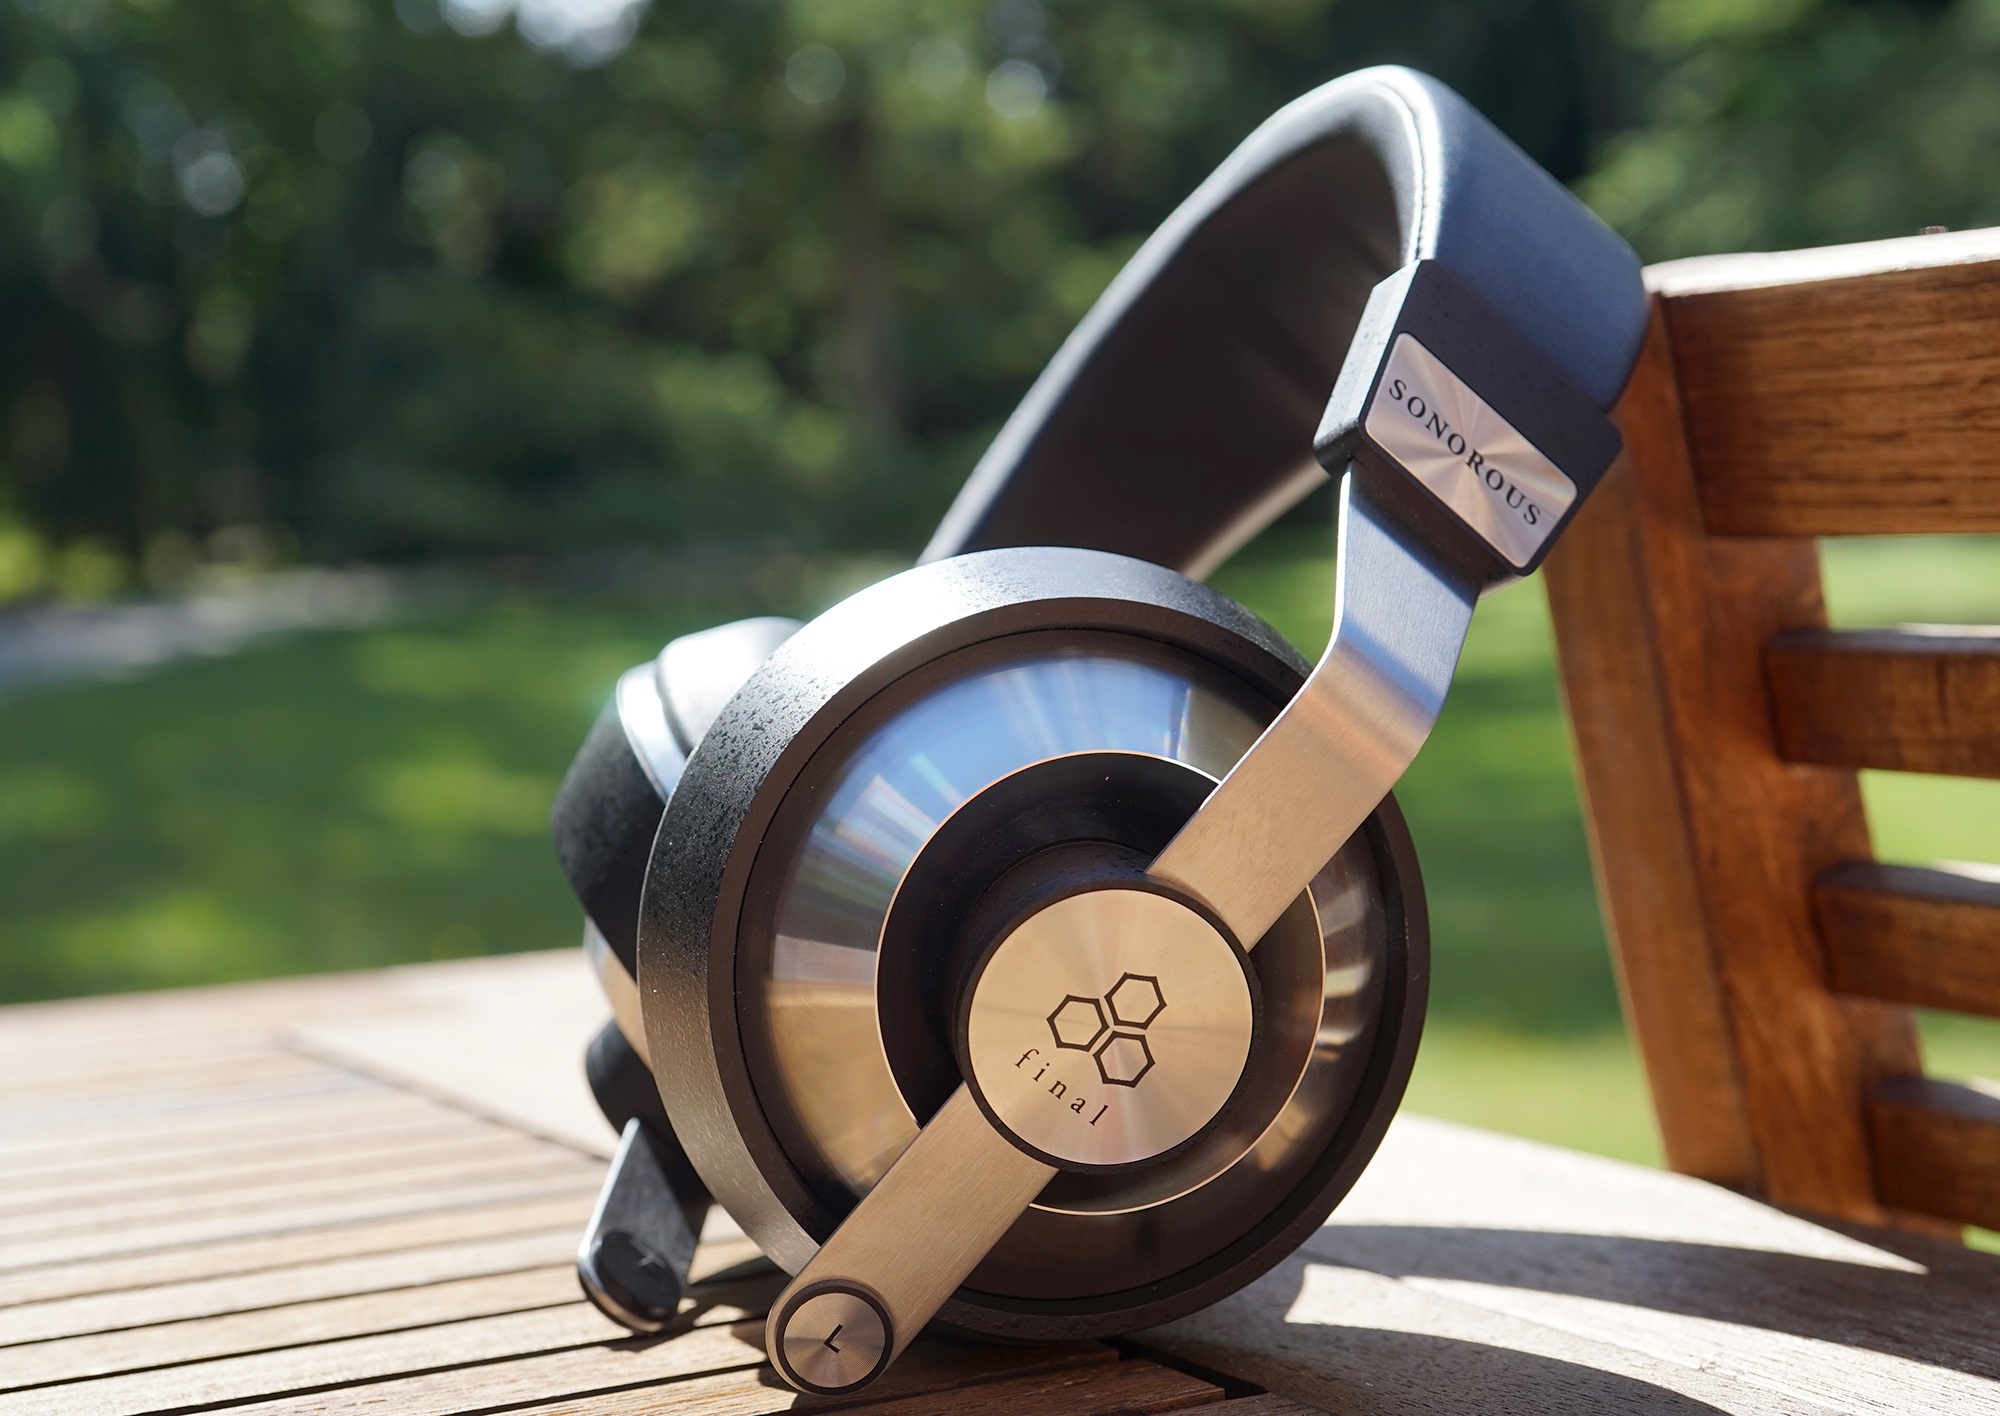 Final Sonorous VI review: hybrid headphones - Son-Vidéo.com: blog